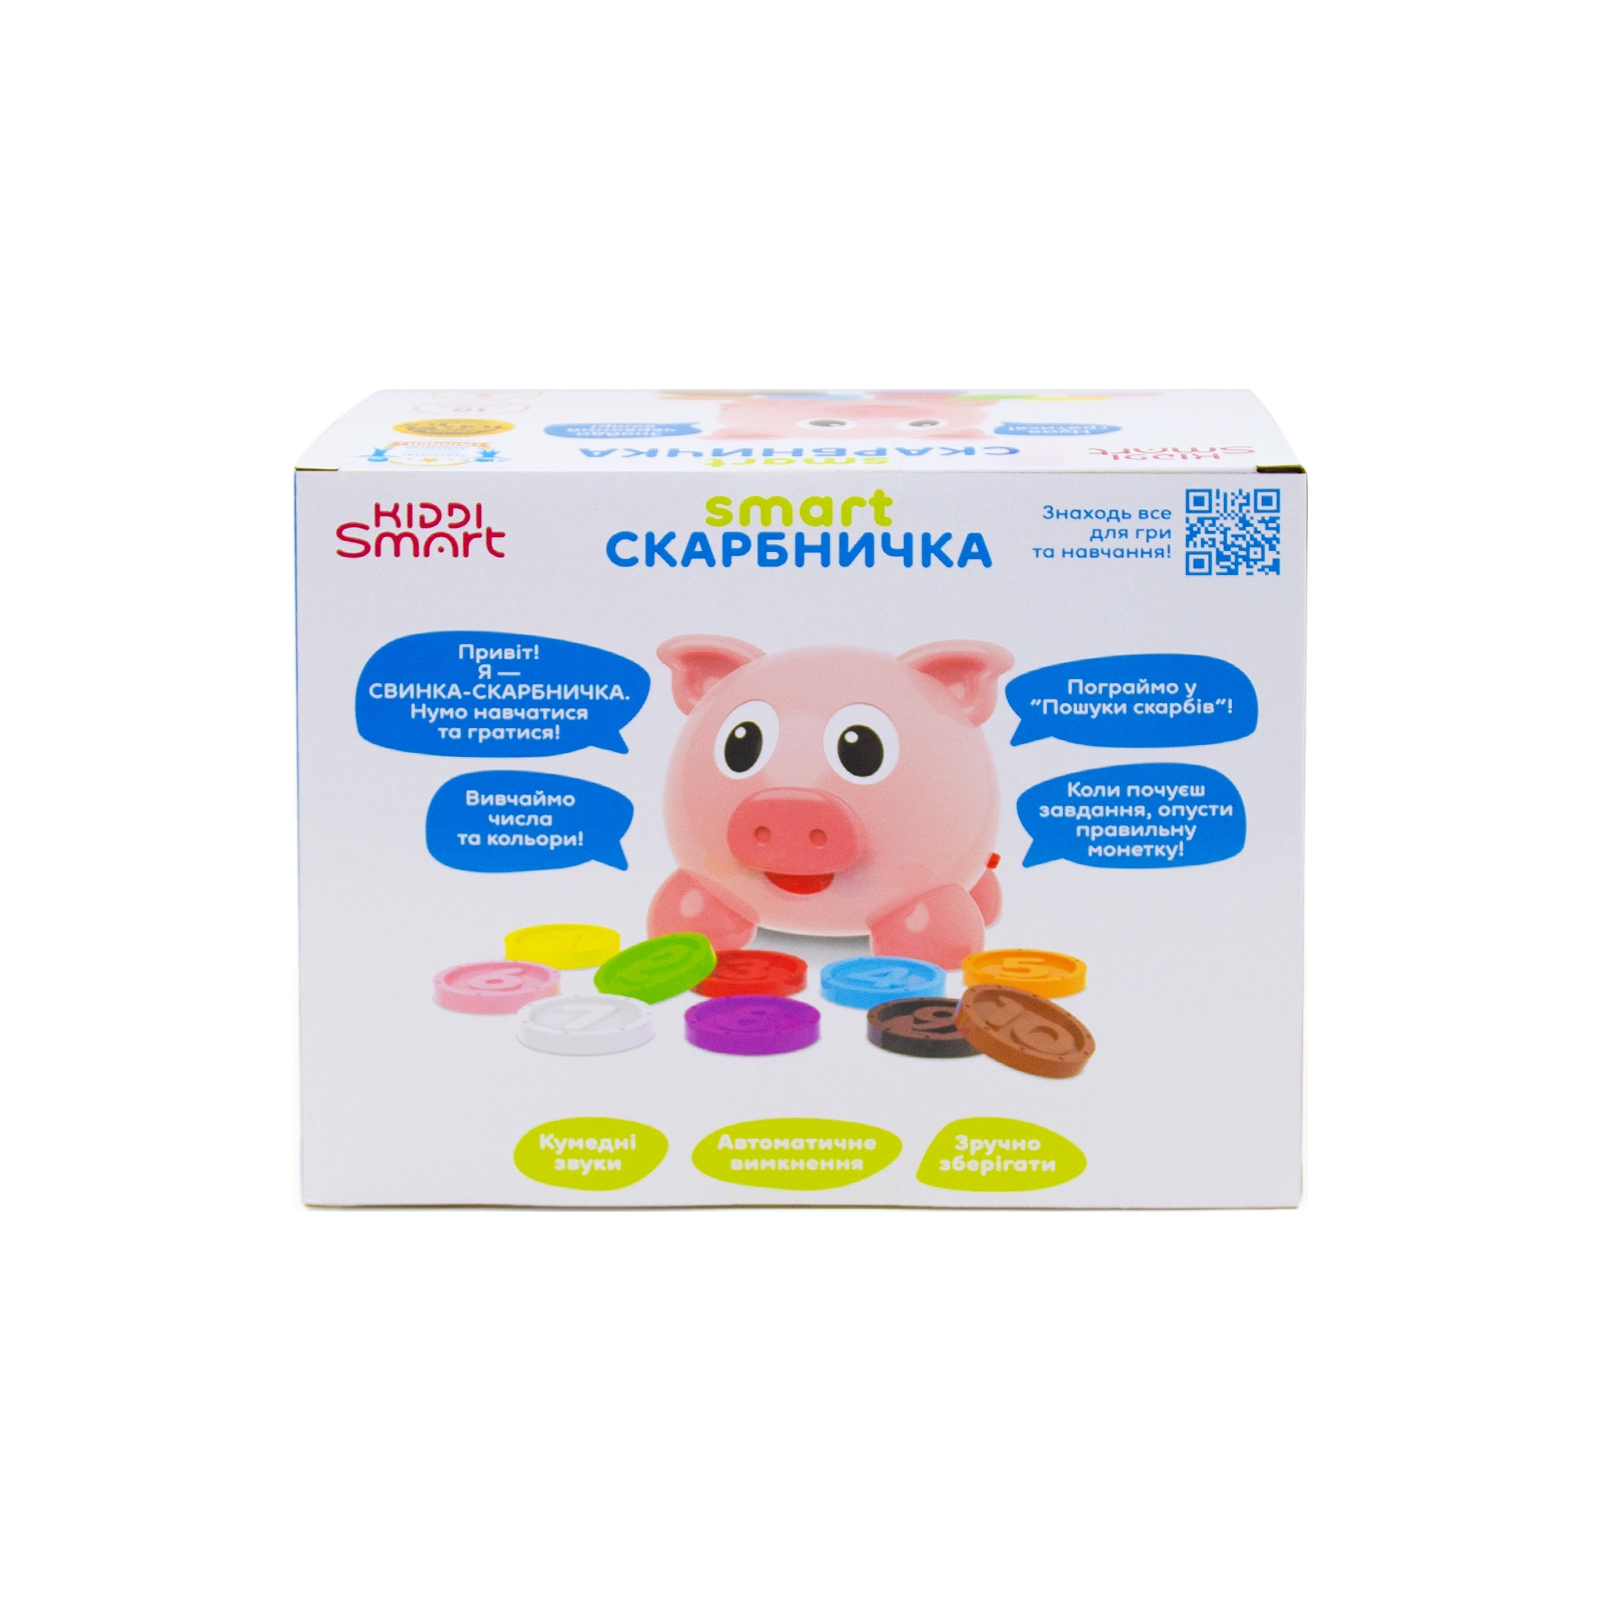 Развивающая игрушка Kiddi Smart Интерактивная обучающая игрушка Smart-Копилочка украинский и английский язык (208441) изображение 8